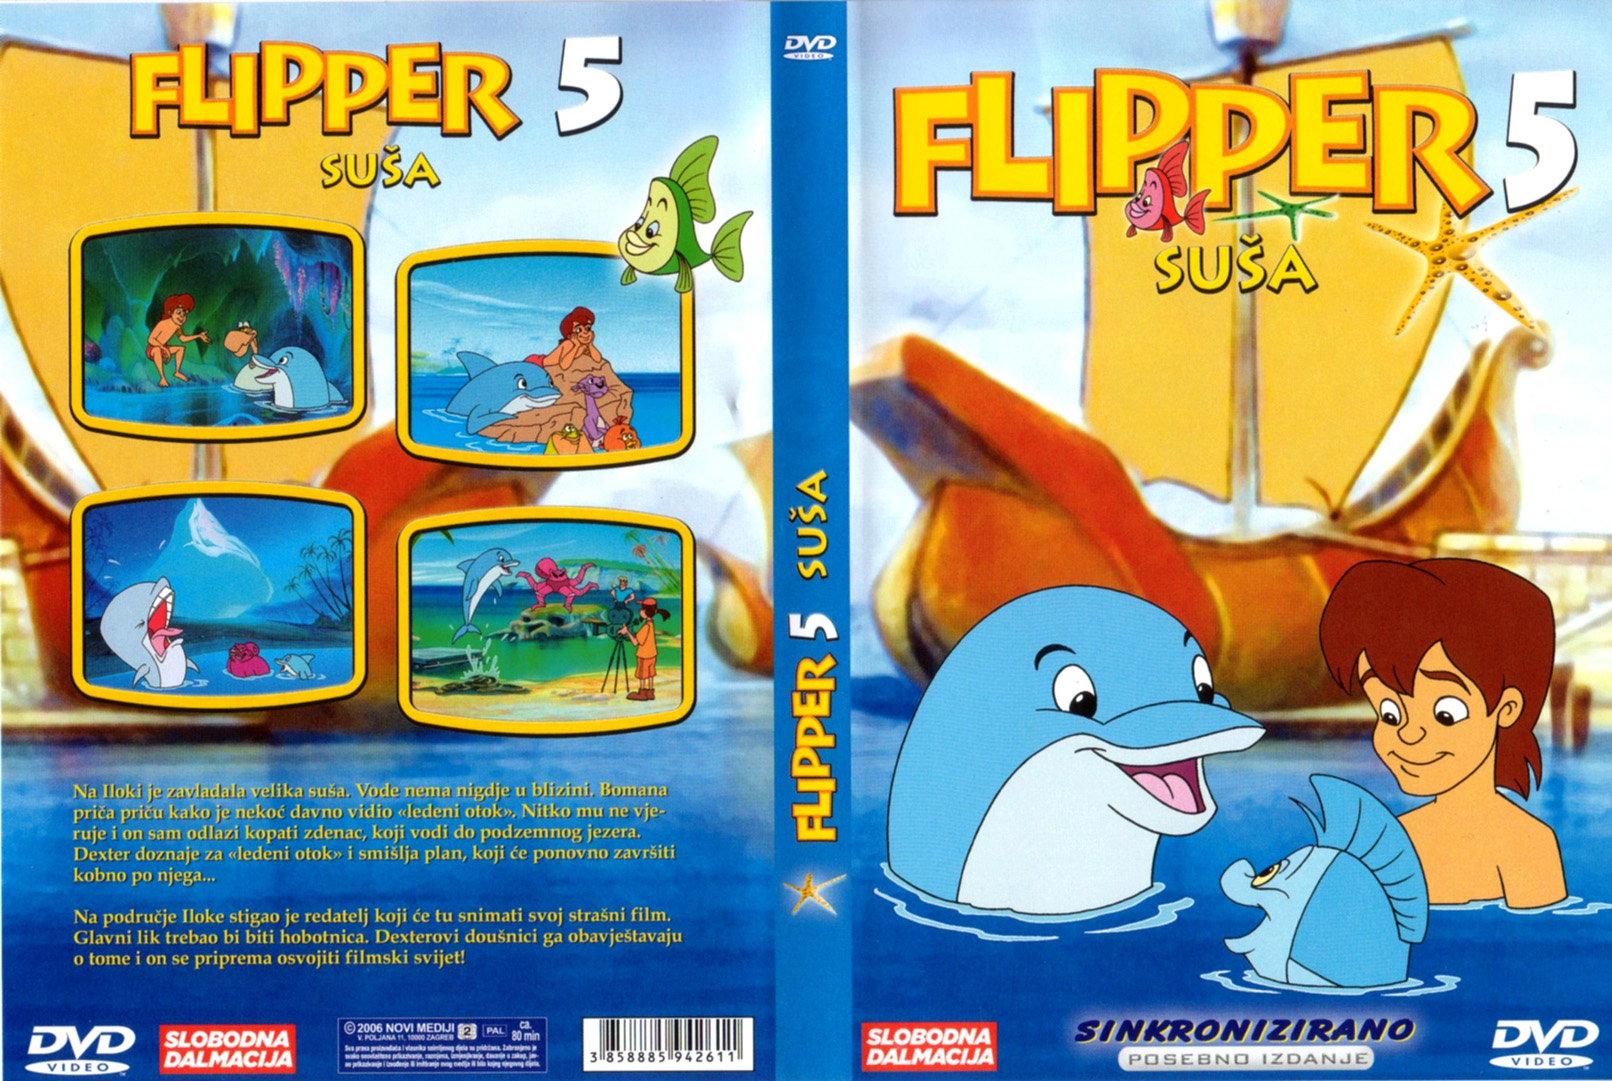 Click to view full size image -  DVD Cover - F - DVD - FLIPPER5.jpg - DVD - FLIPPER5.jpg